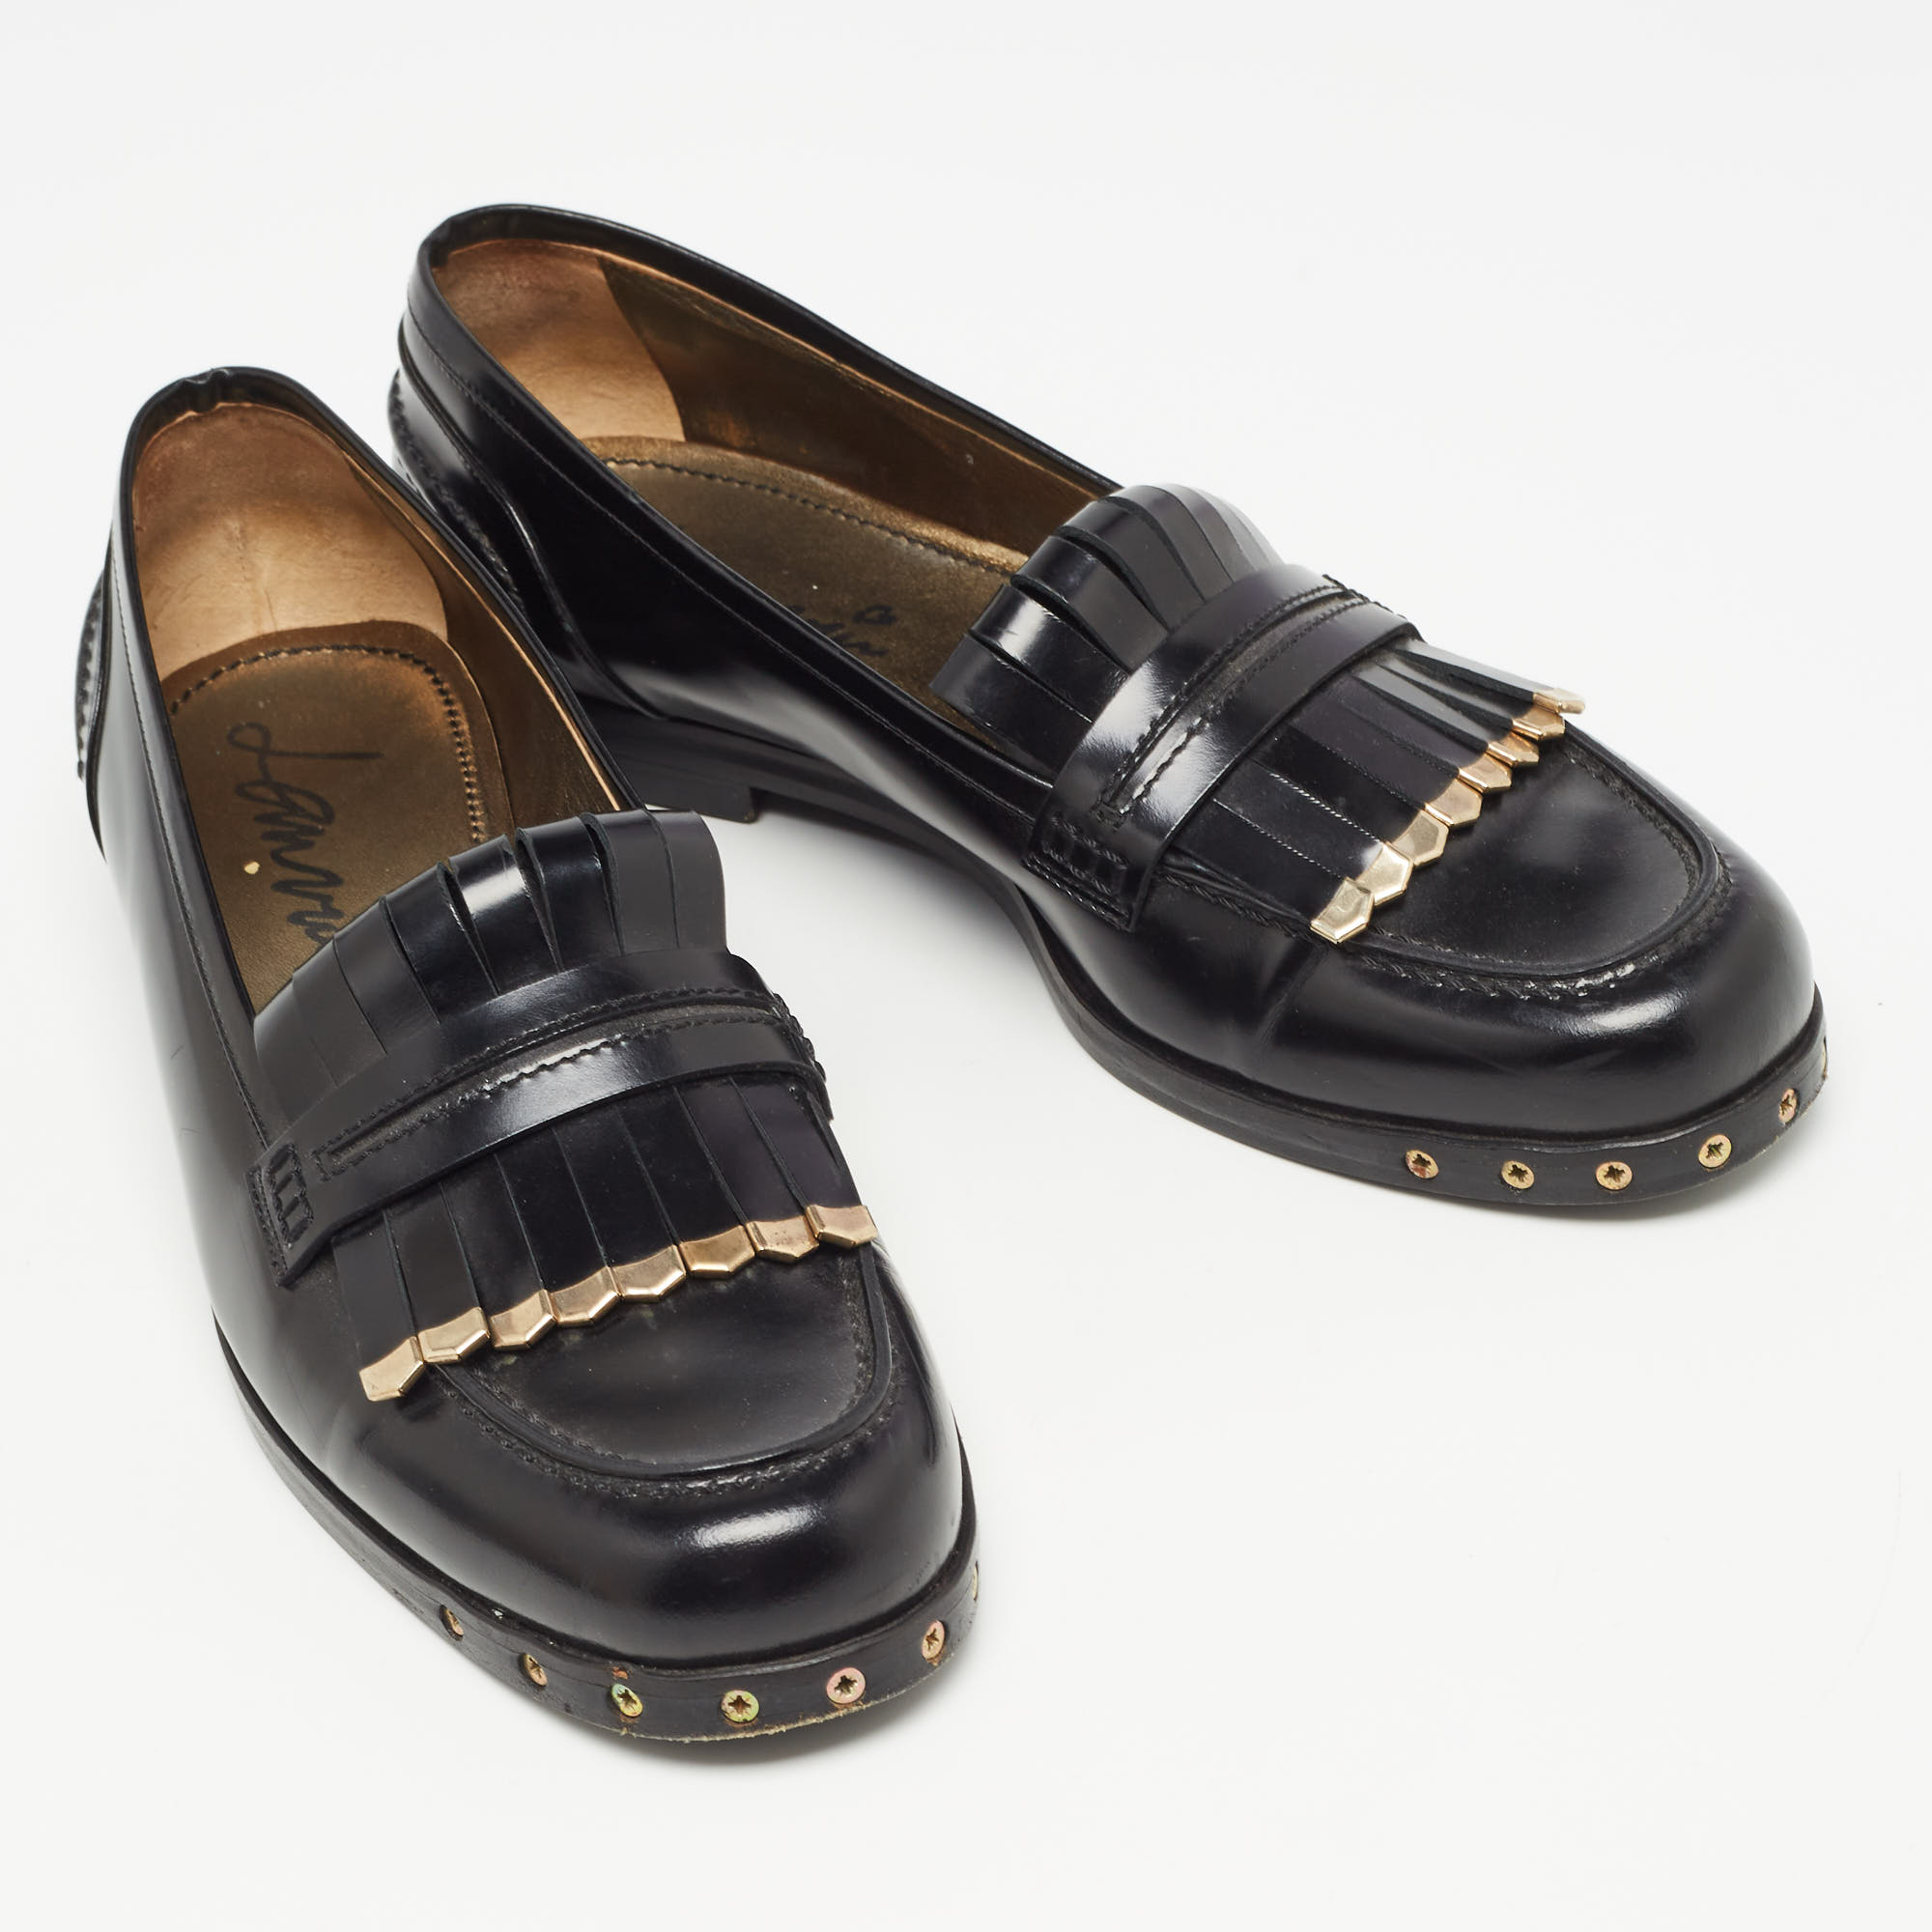 Lanvin Black Leather Fringe Loafers Size 40.5